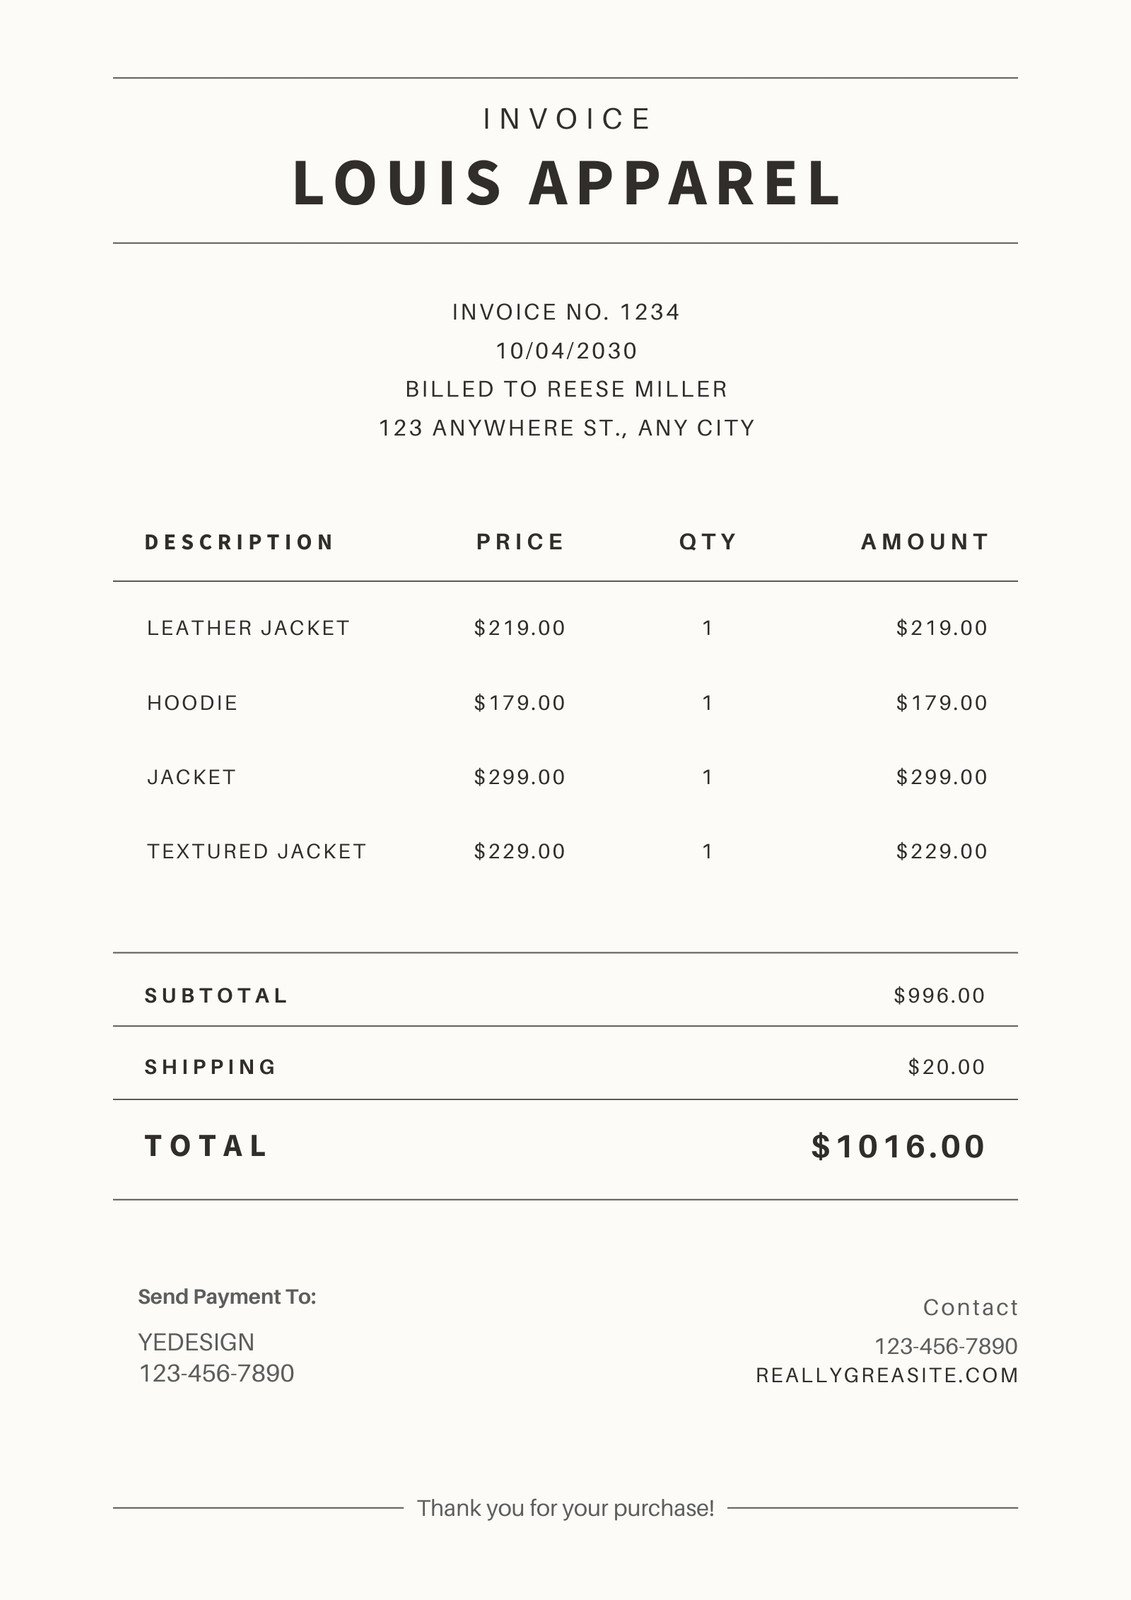 Things That Matter: Louis Vuitton receipt